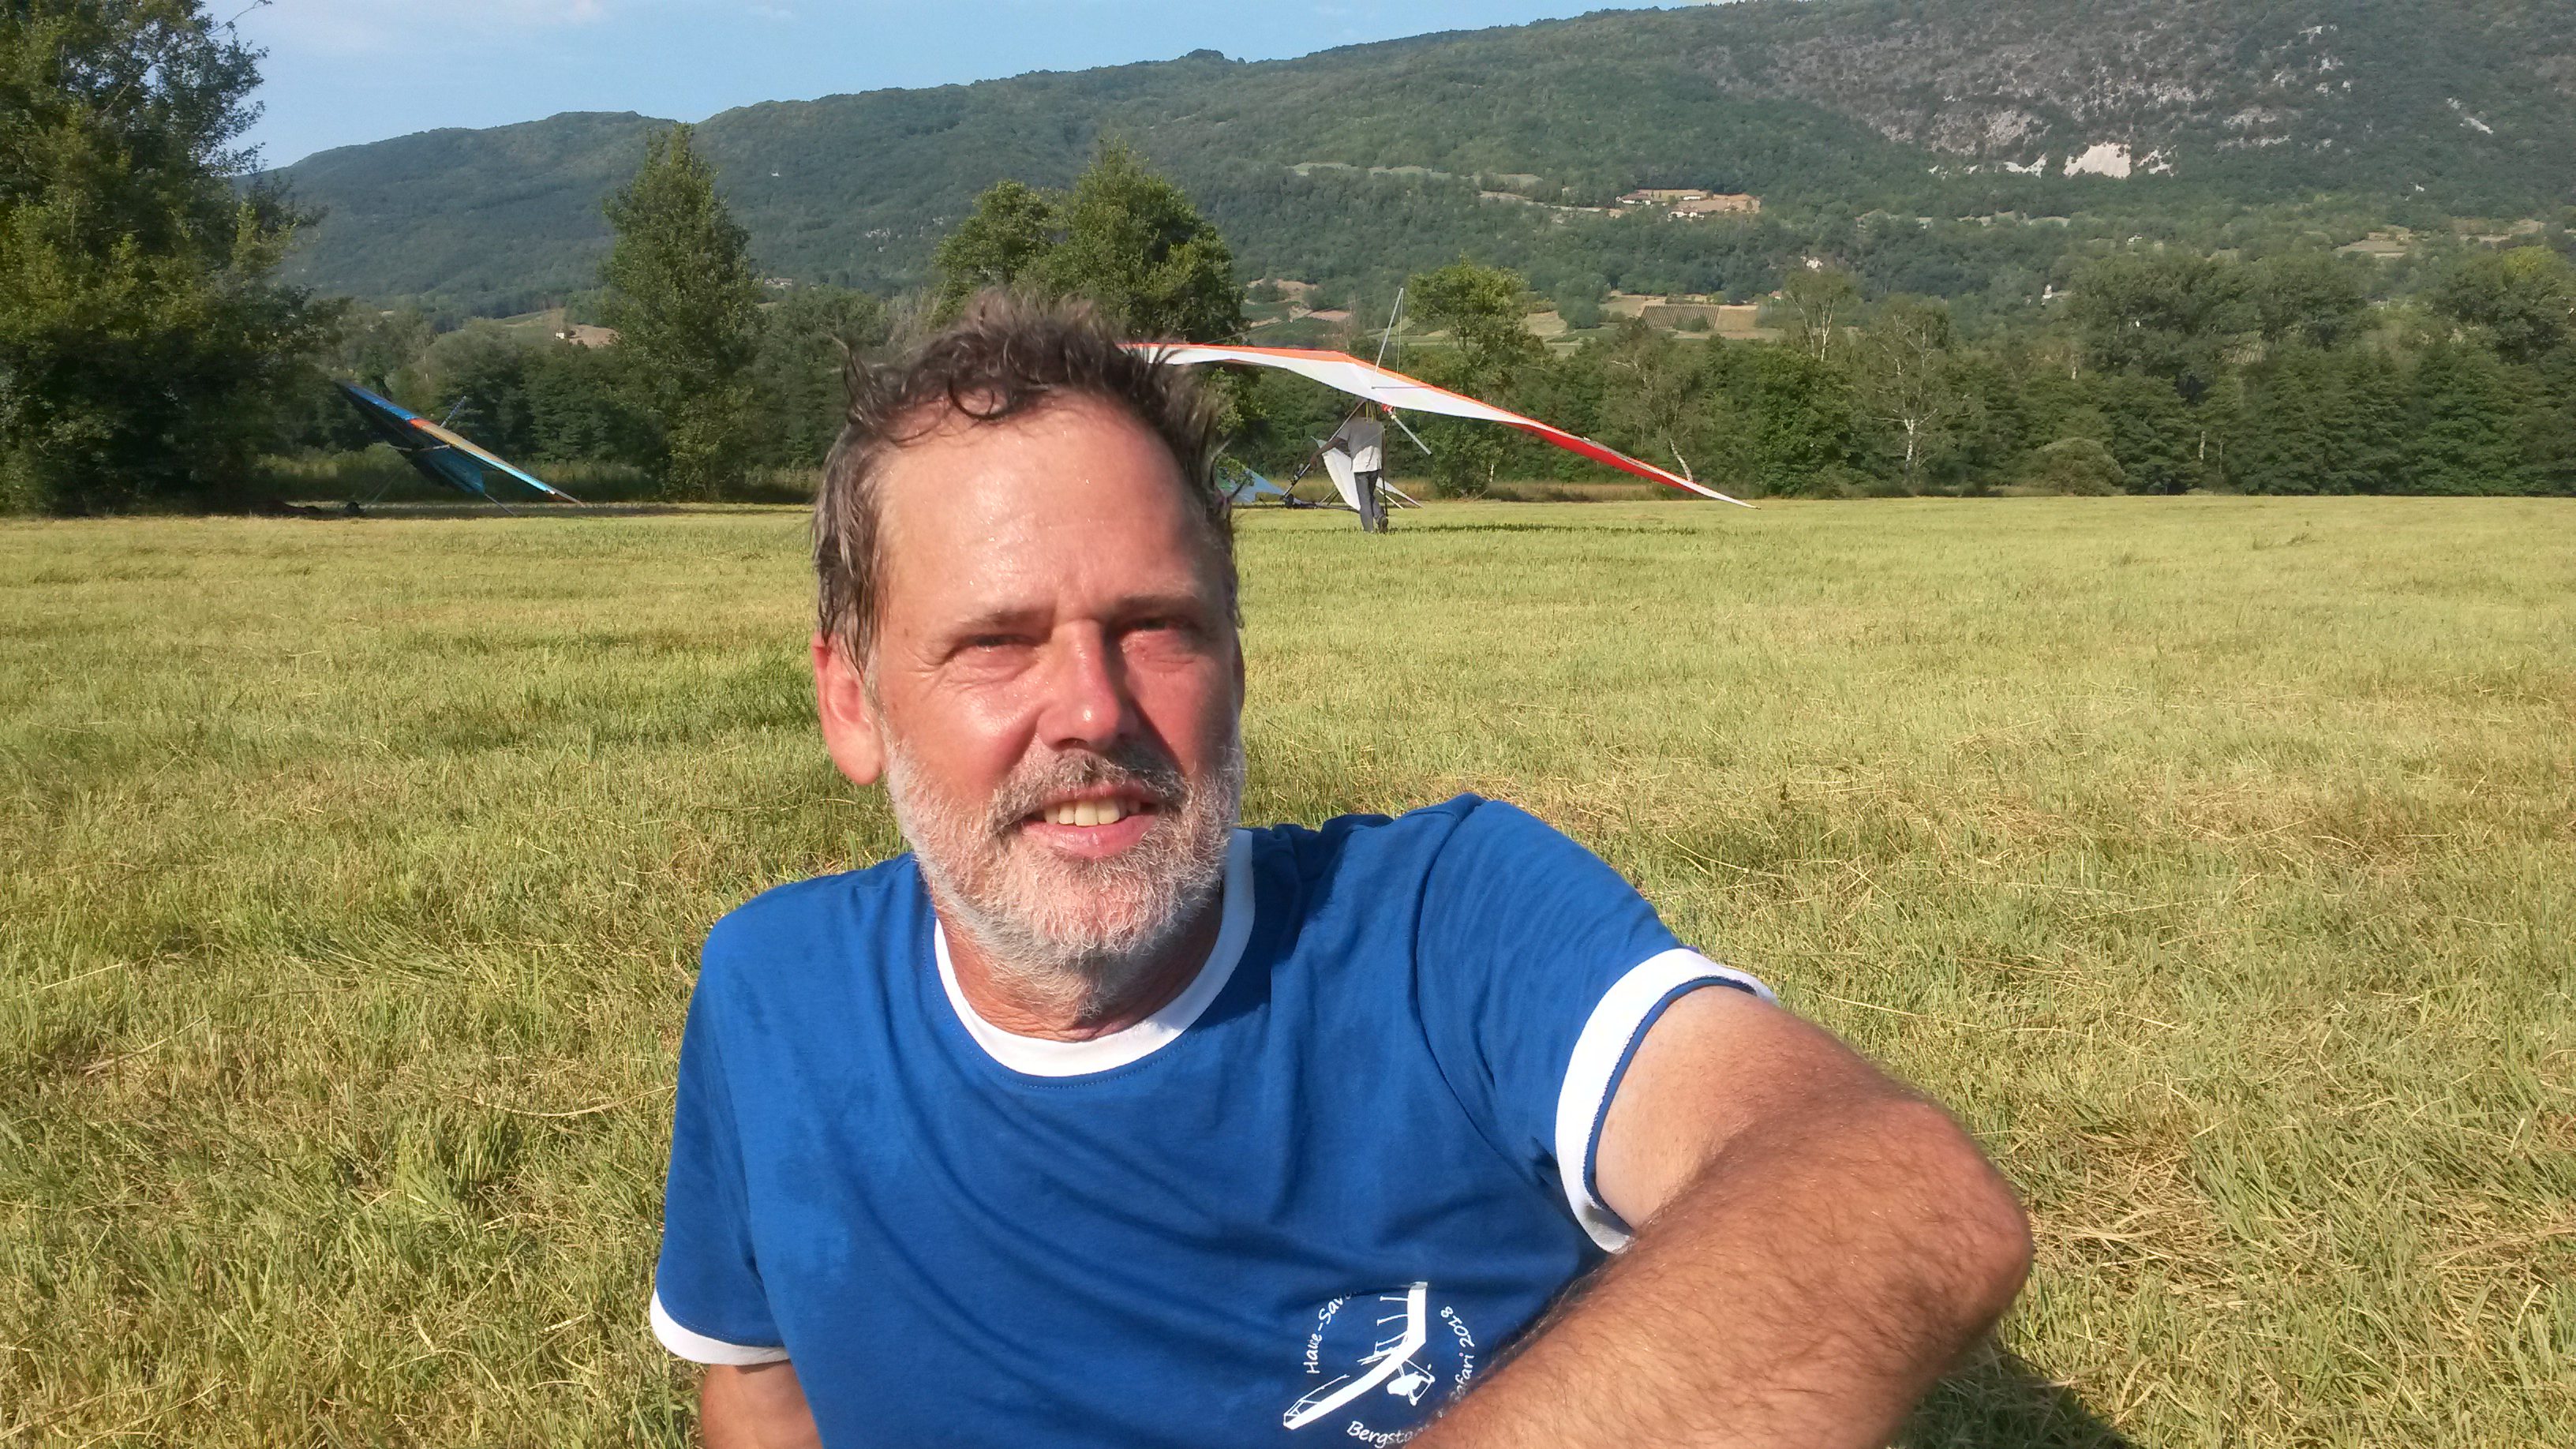 Foto van een man, zittend op een veld in de zon, met een landende deltavlieger op de achtergrond